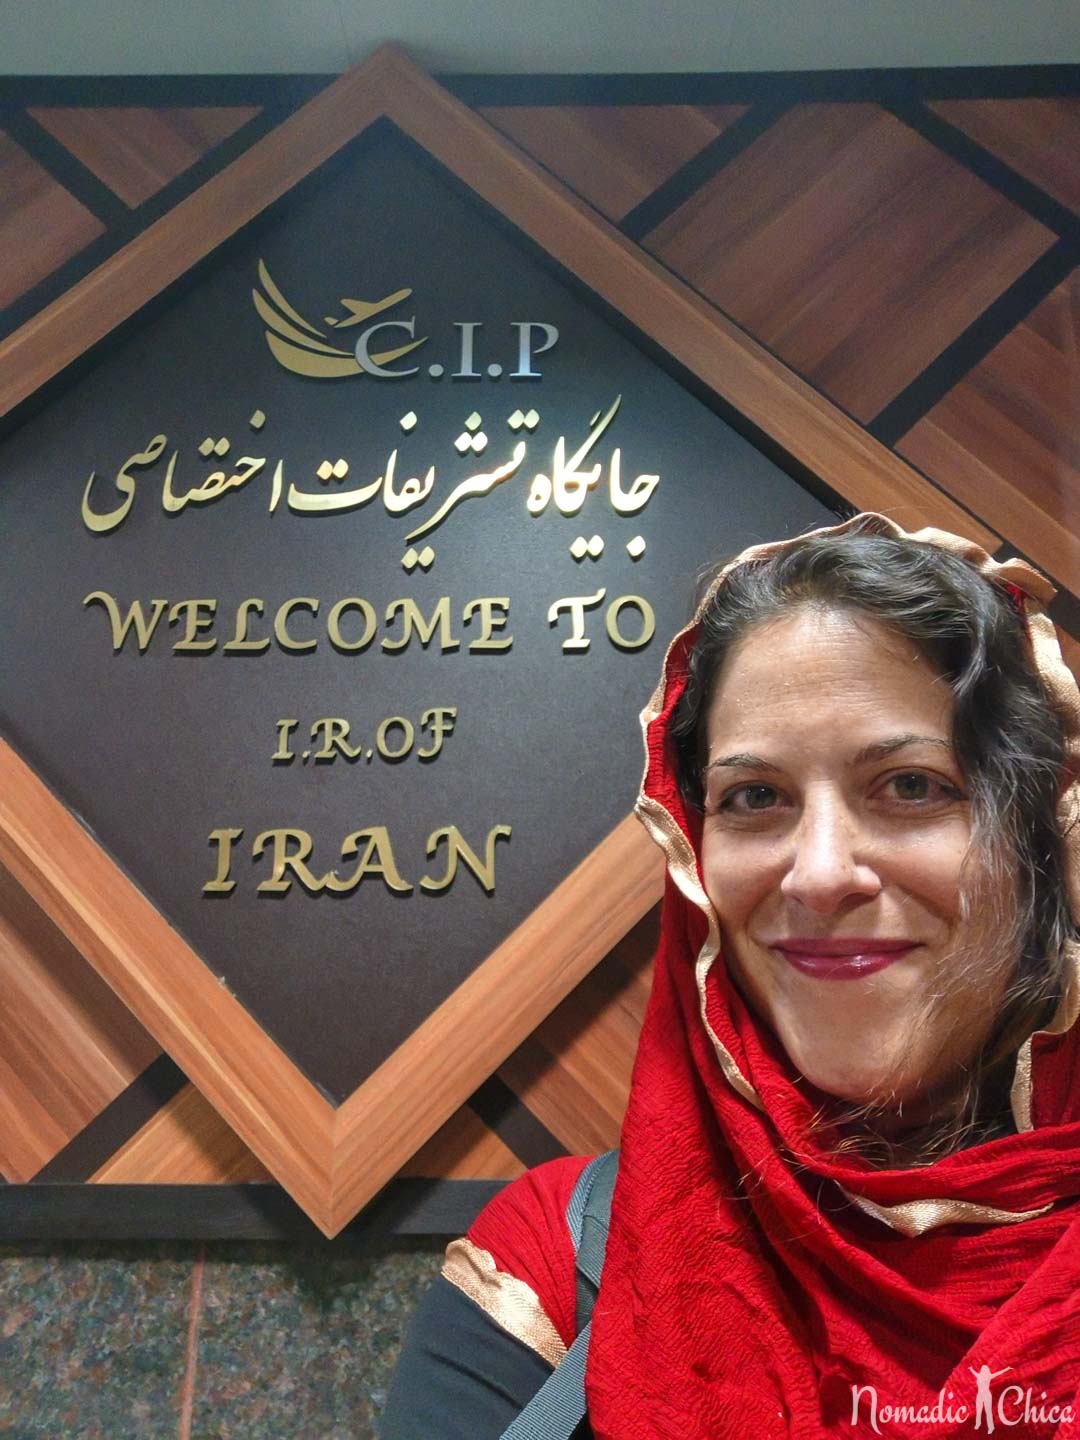 Tehran airport CIP treatment e visa